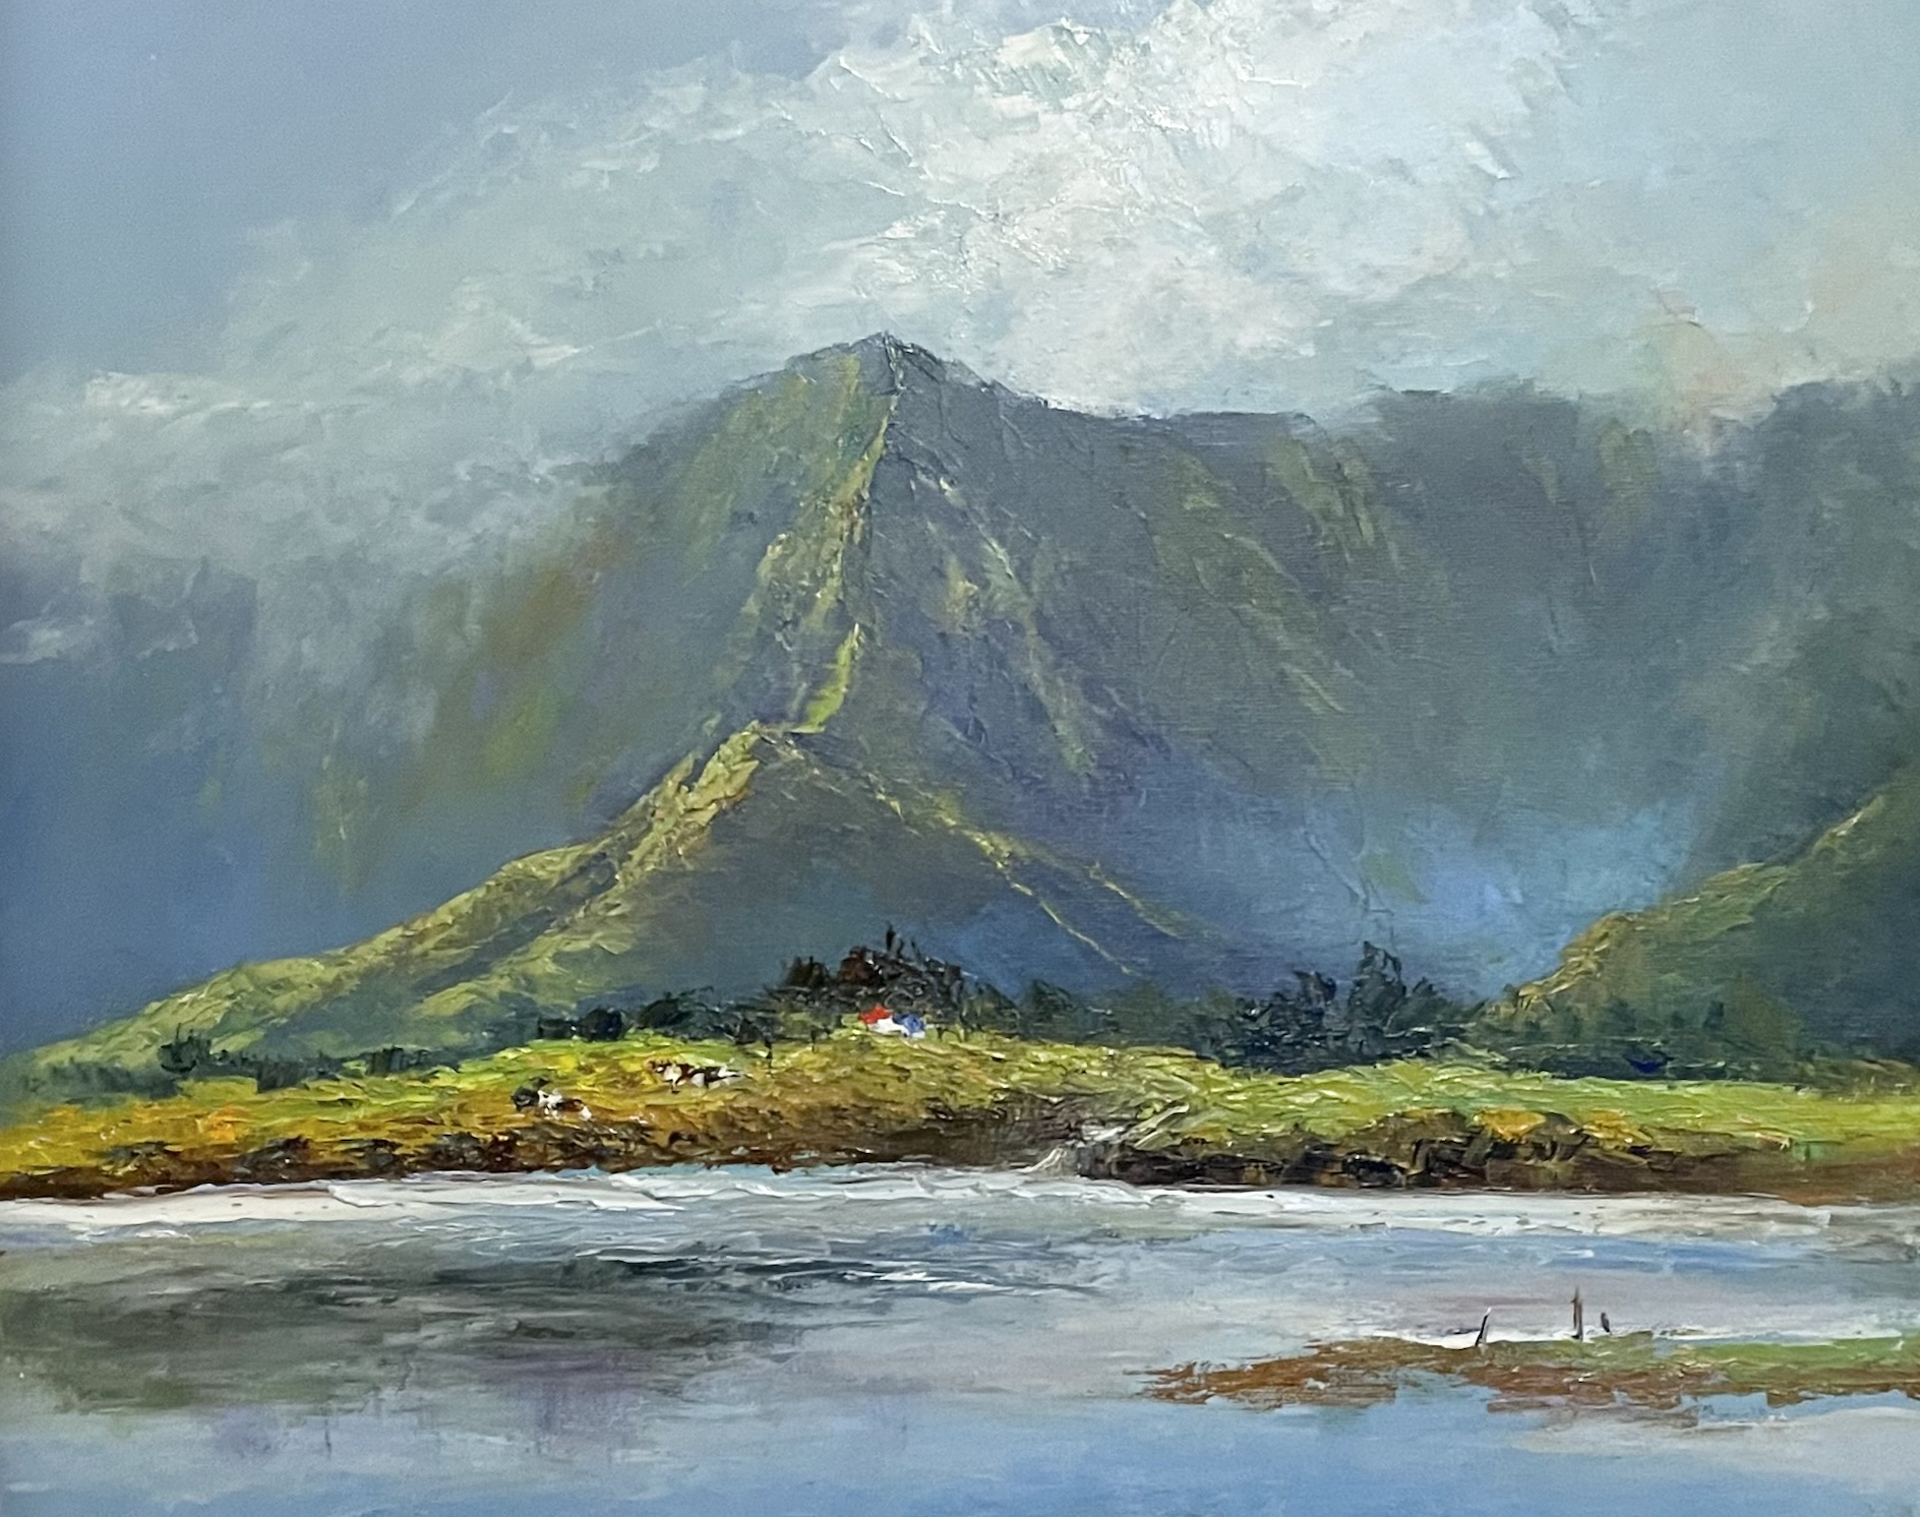 Koʻolau, Kahaluʻu Fishpond to Ahuimanu Valley by Ed Furuike